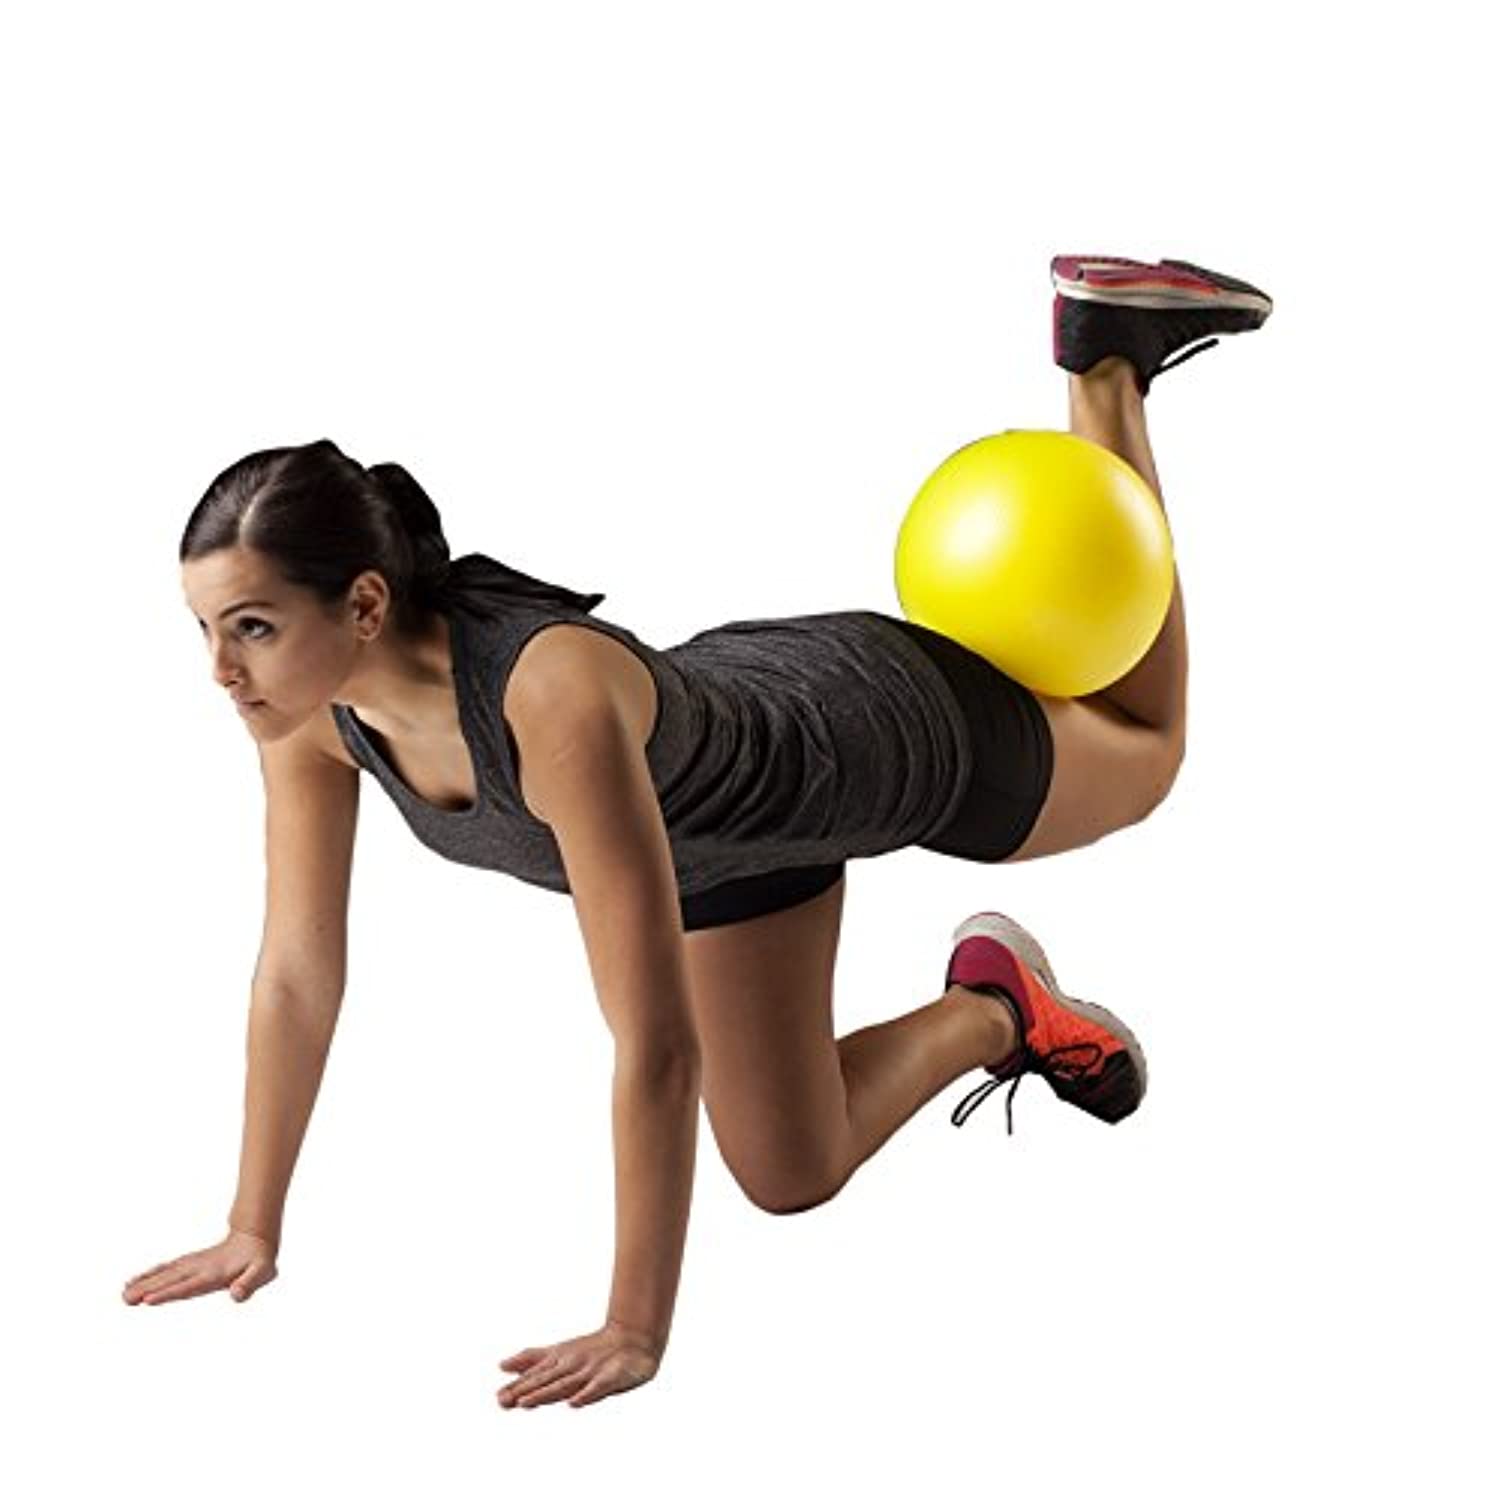 Mini Pelota de Ejercicio - Pelota pequeña de Pilates para estabilización,  yoga, estiramiento y fisioterapia Adepaton Yoga y Pilates